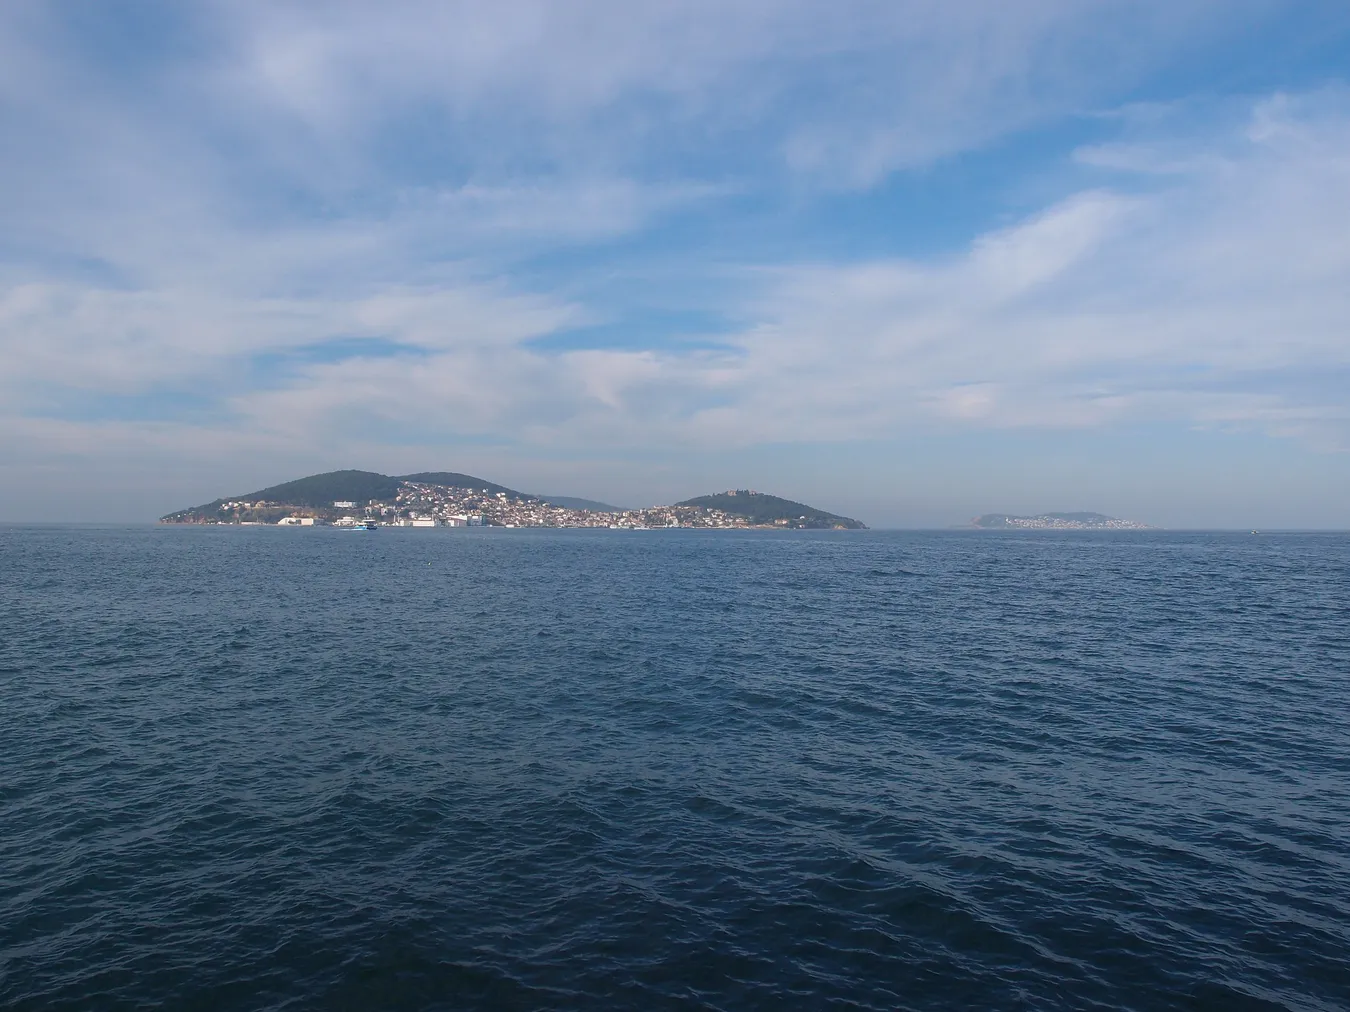 Vistas desde el barco en dirección a las islas Príncipe de Estambul, Turquía.